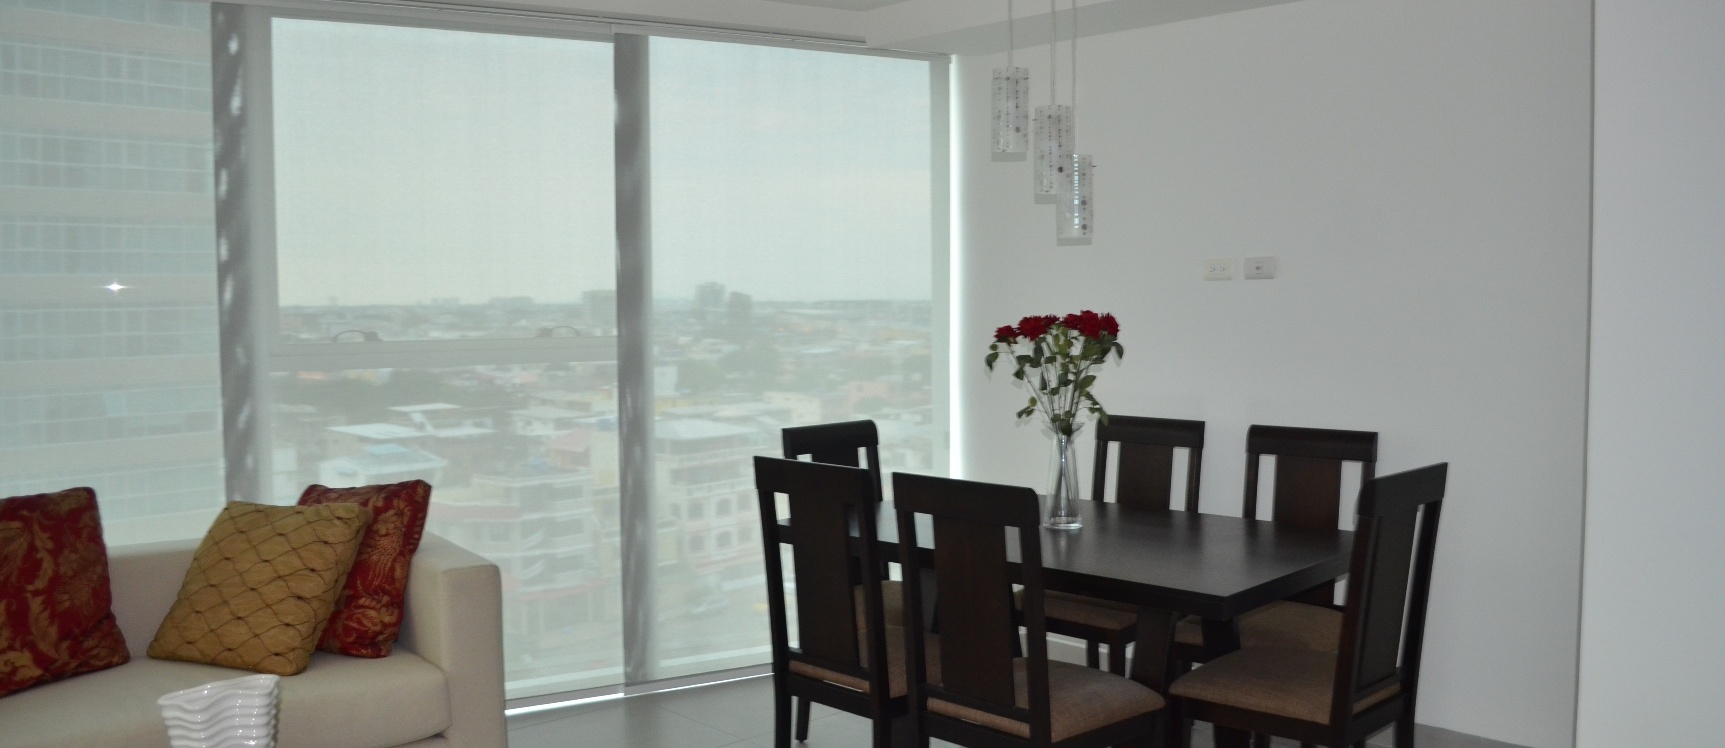 GeoBienes - Departamento en alquiler Edificio Quo norte Guayaquil - Plusvalia Guayaquil Casas de venta y alquiler Inmobiliaria Ecuador